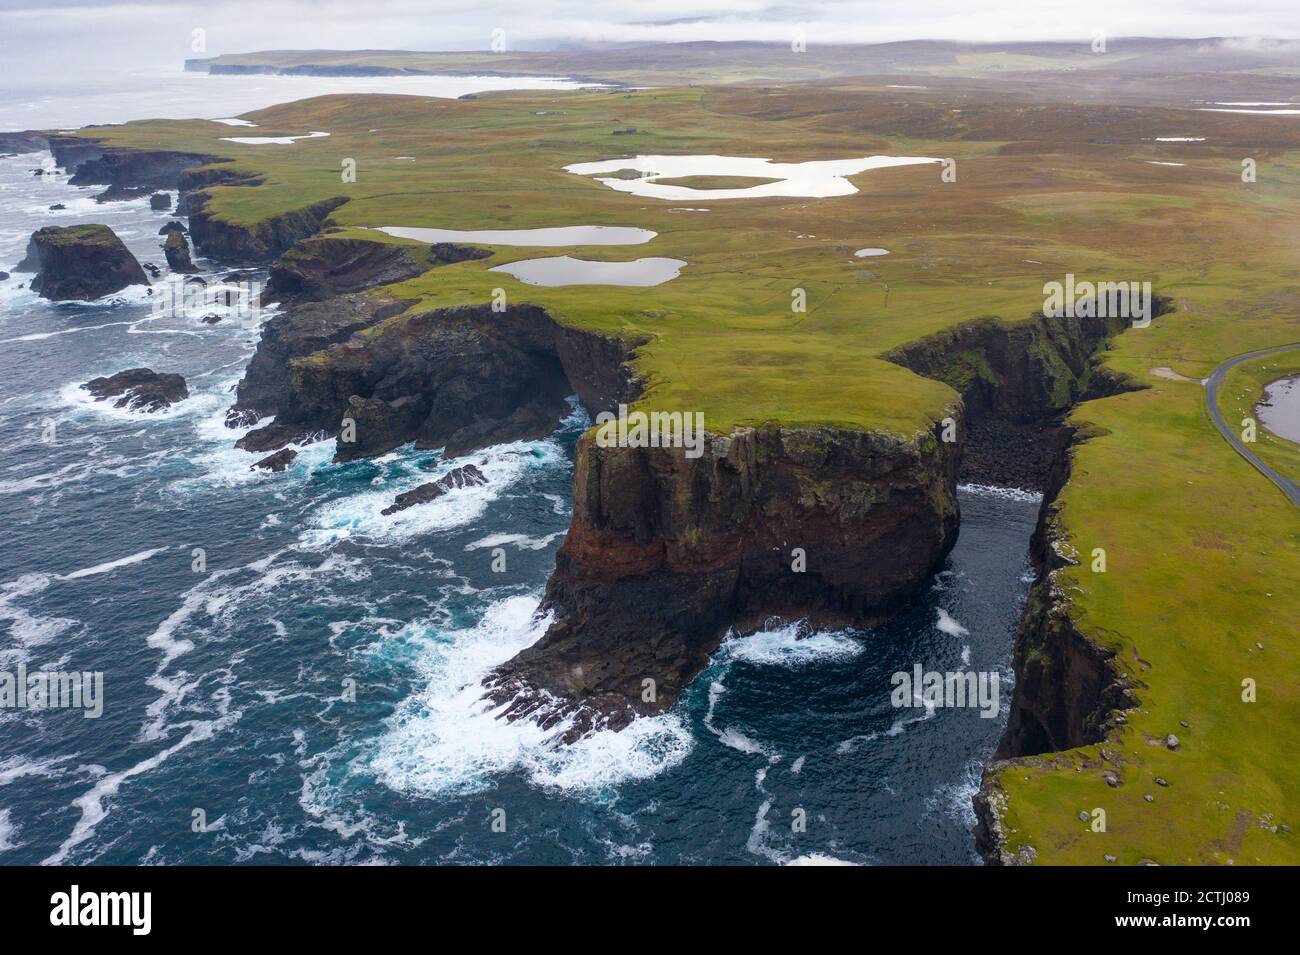 Spettacolari scogliere con Calder's Geo a destra, sulla costa di Eshaness a Northmavine , terraferma settentrionale delle Isole Shetland, Scozia, Regno Unito Foto Stock